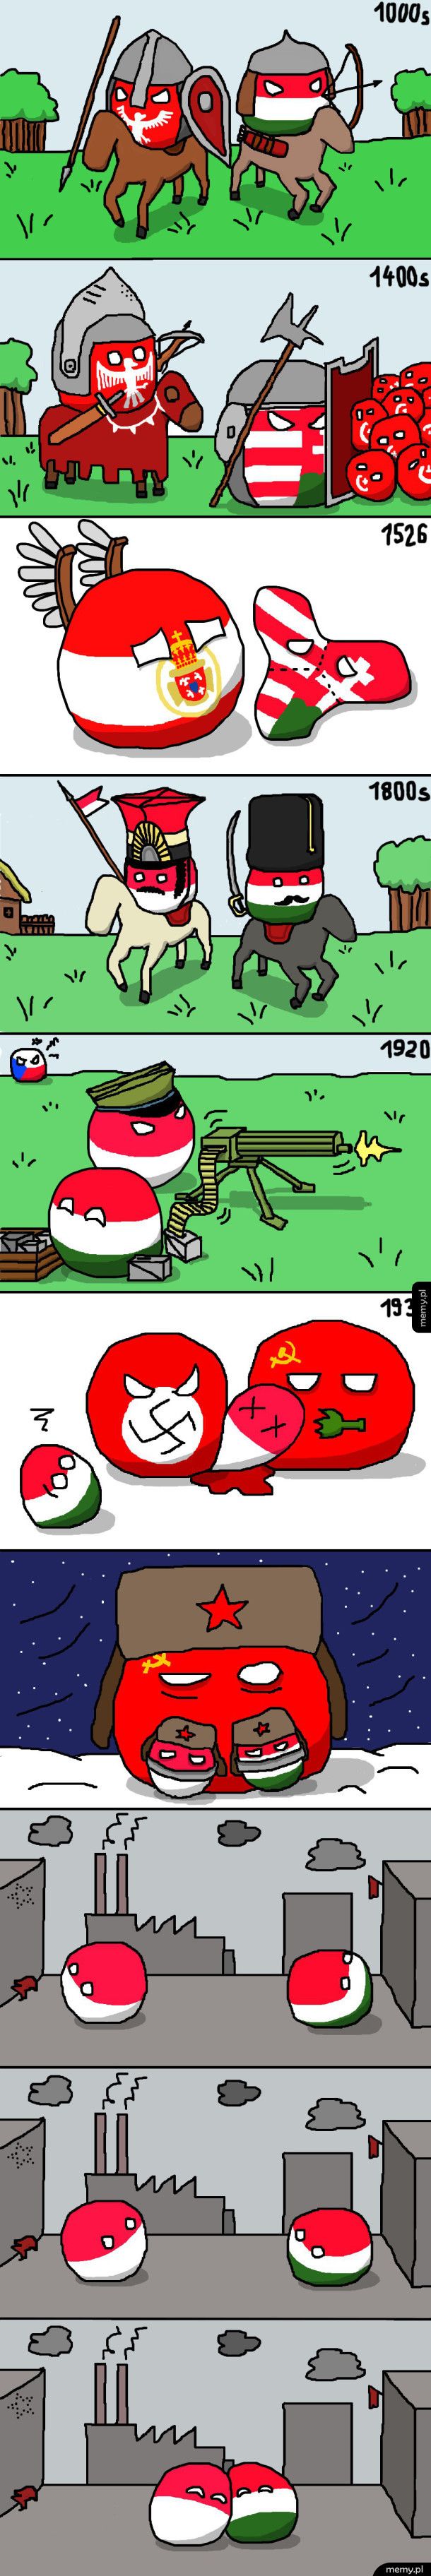 Polska i Węgry